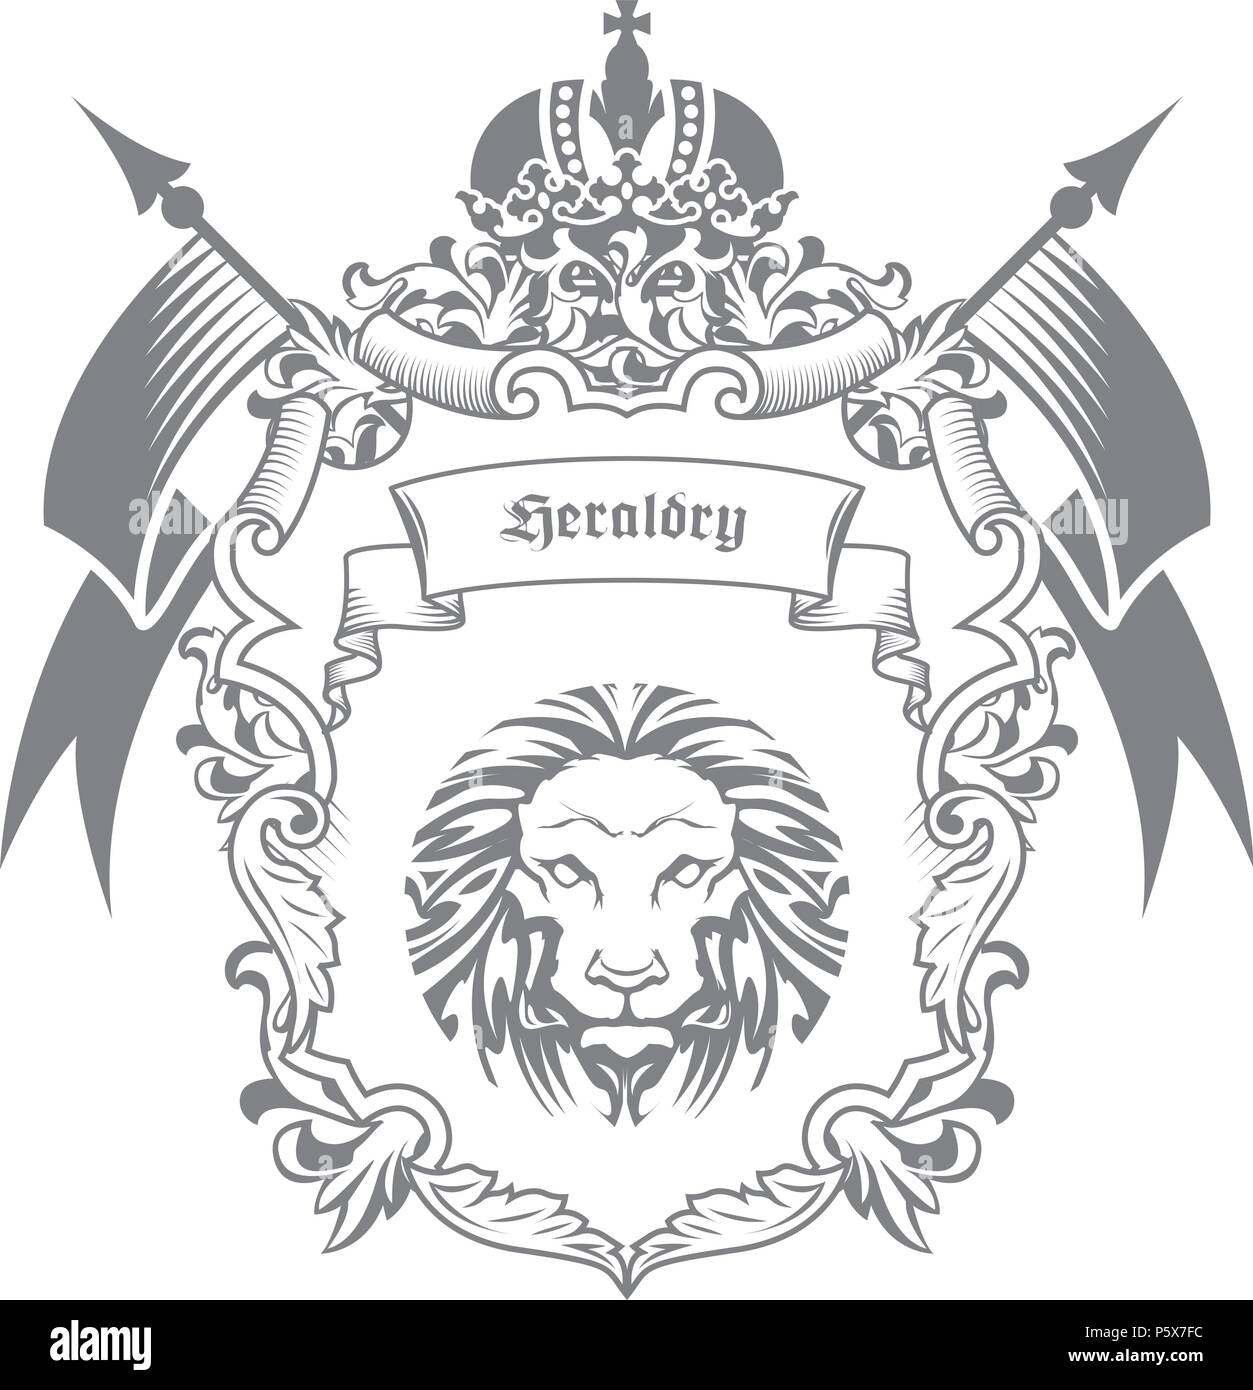 Blazon Heraldry